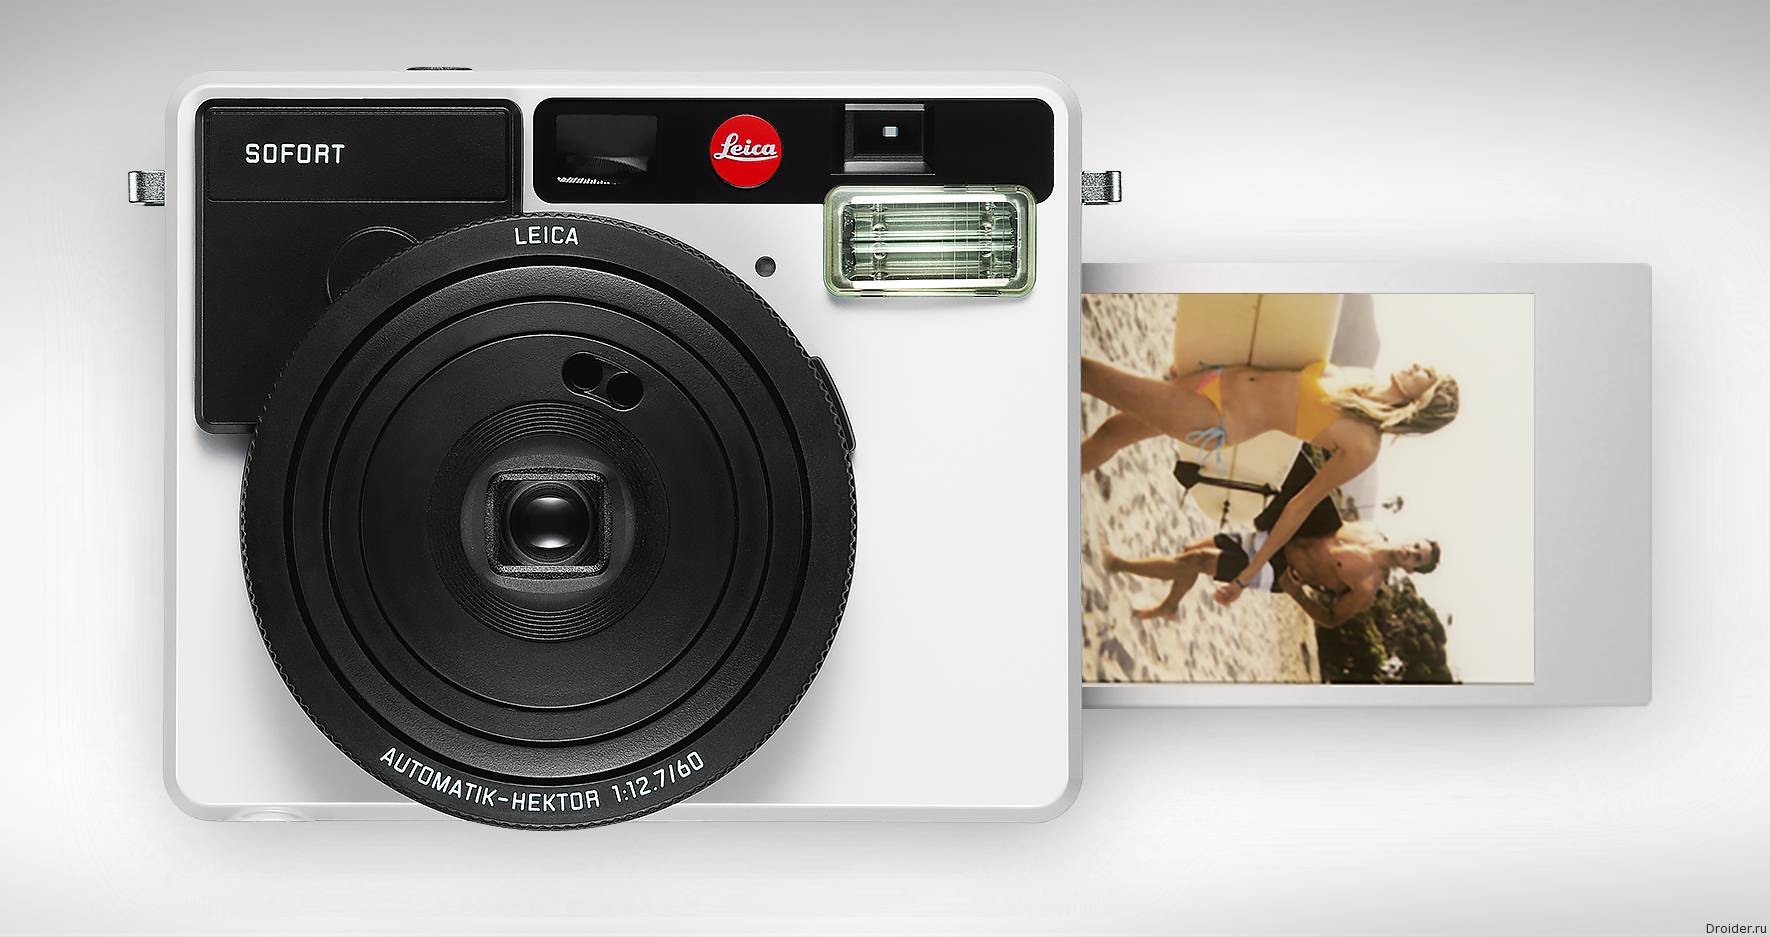 Пленочная Leica. Leica Polaroid. Одноразовый пленочный фотоаппарат. Leica мгновенное фото. Едят на камеру как называется